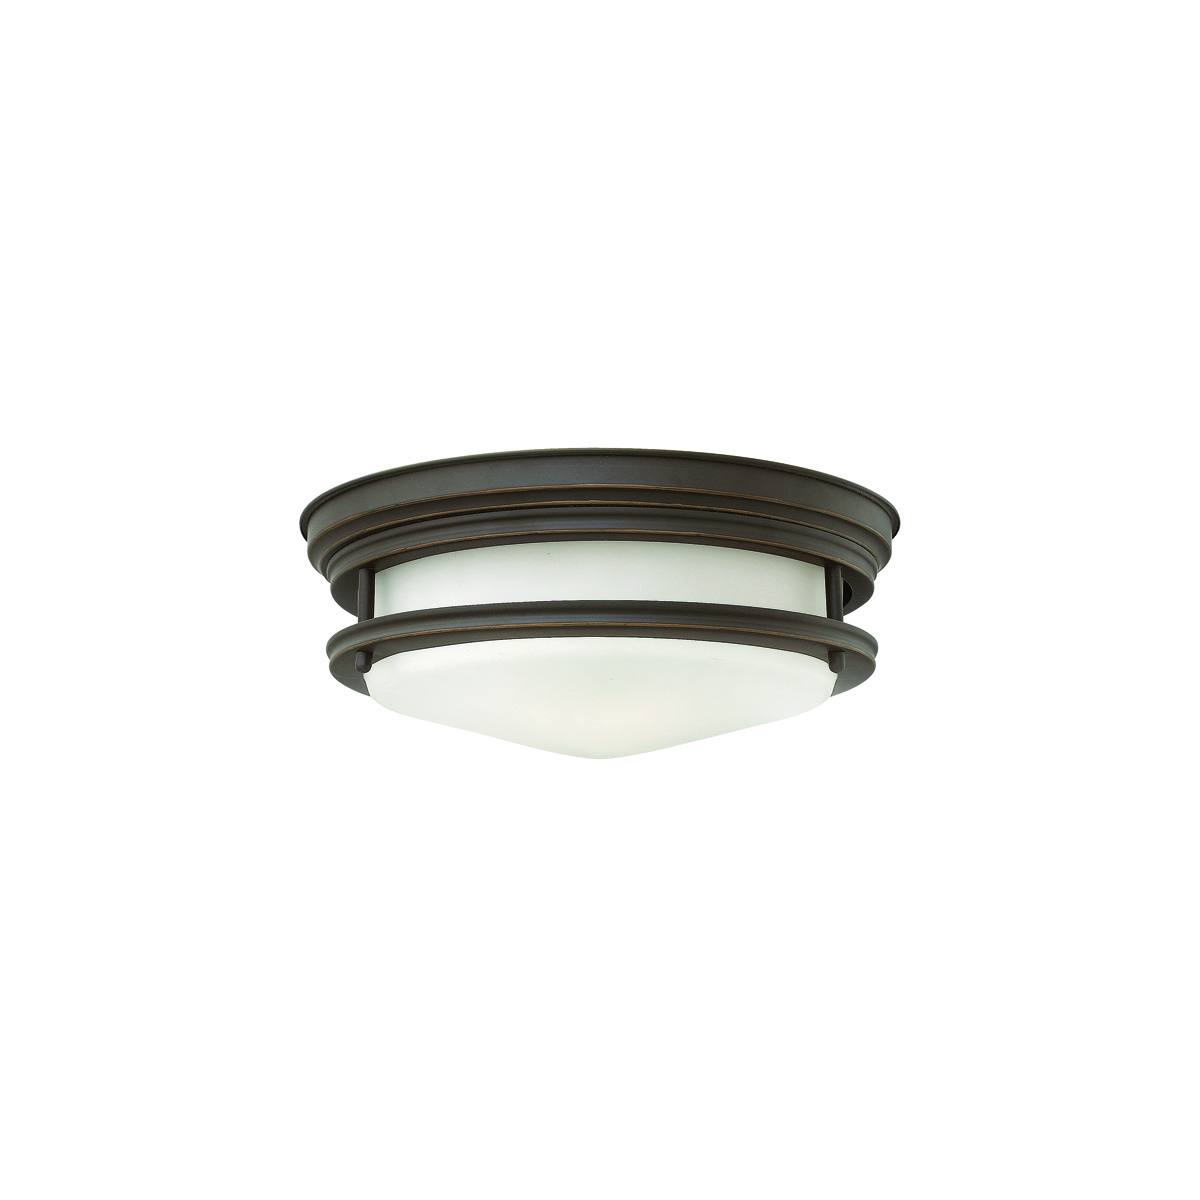 Потолочный светильник для ванных комнат QN-HADRIAN-FS-OZ-OPAL, Потолочные светильники | Гостиная, Кухня, Прихожая.